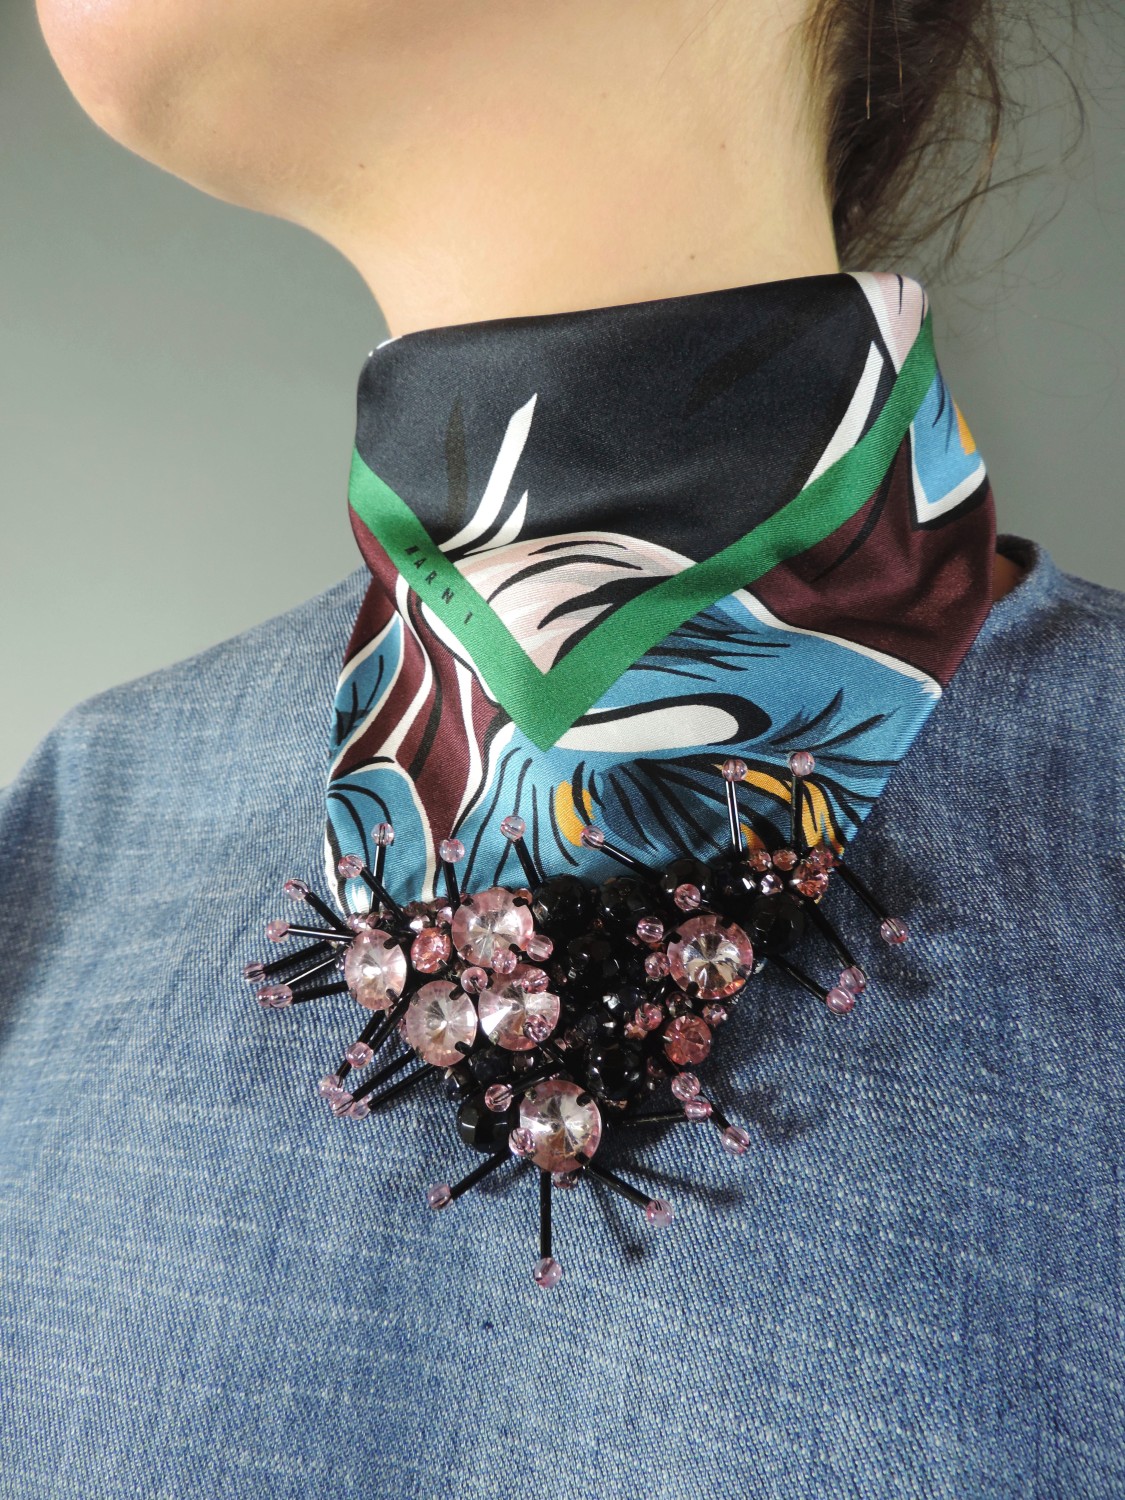 shop Marni Sales Accessori: Marni foulard stampa amlapure in seta con applicazioni gioiello nel color wine. number 606